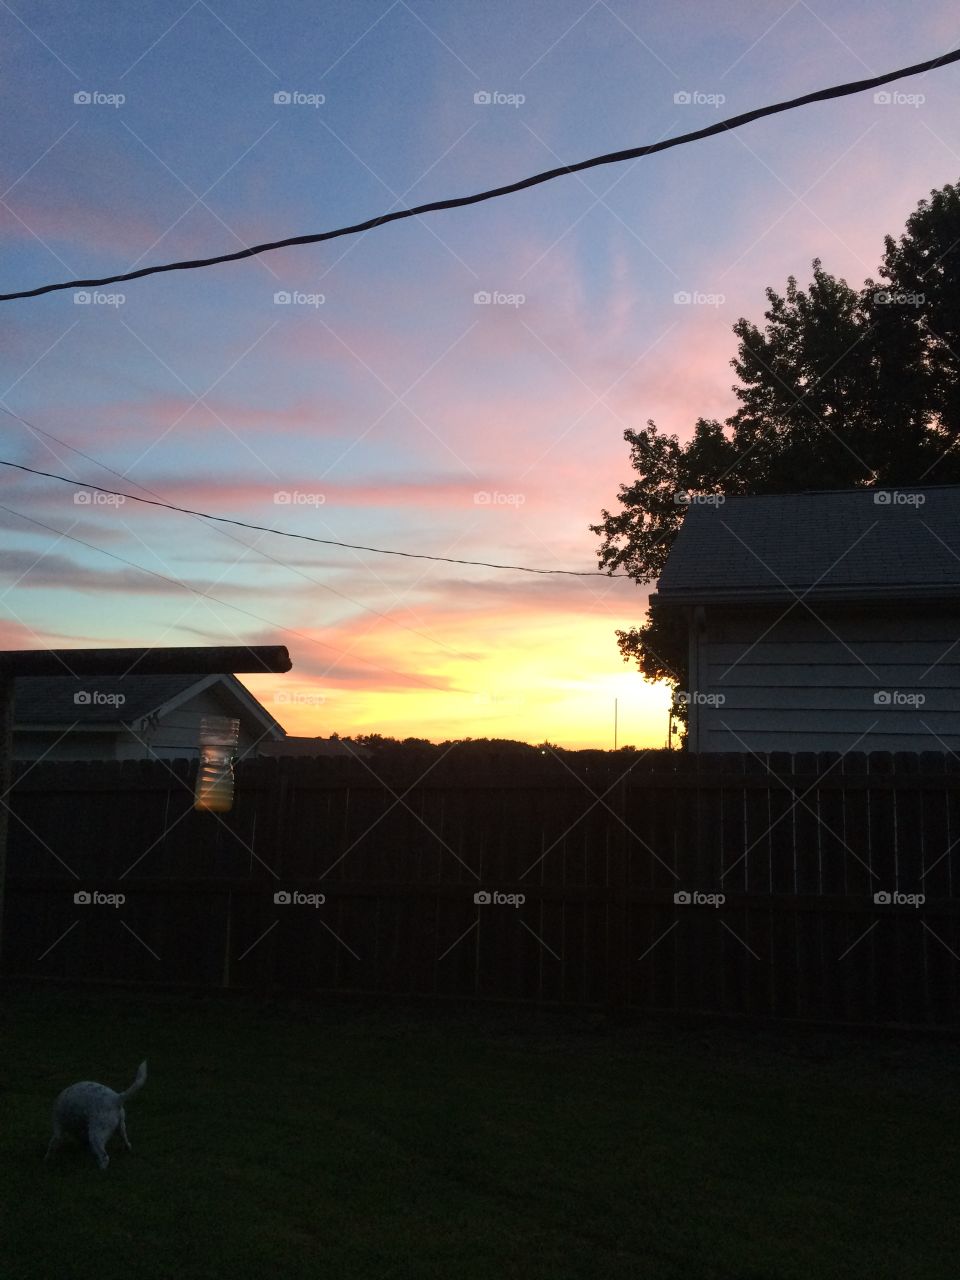 Backyard sunset